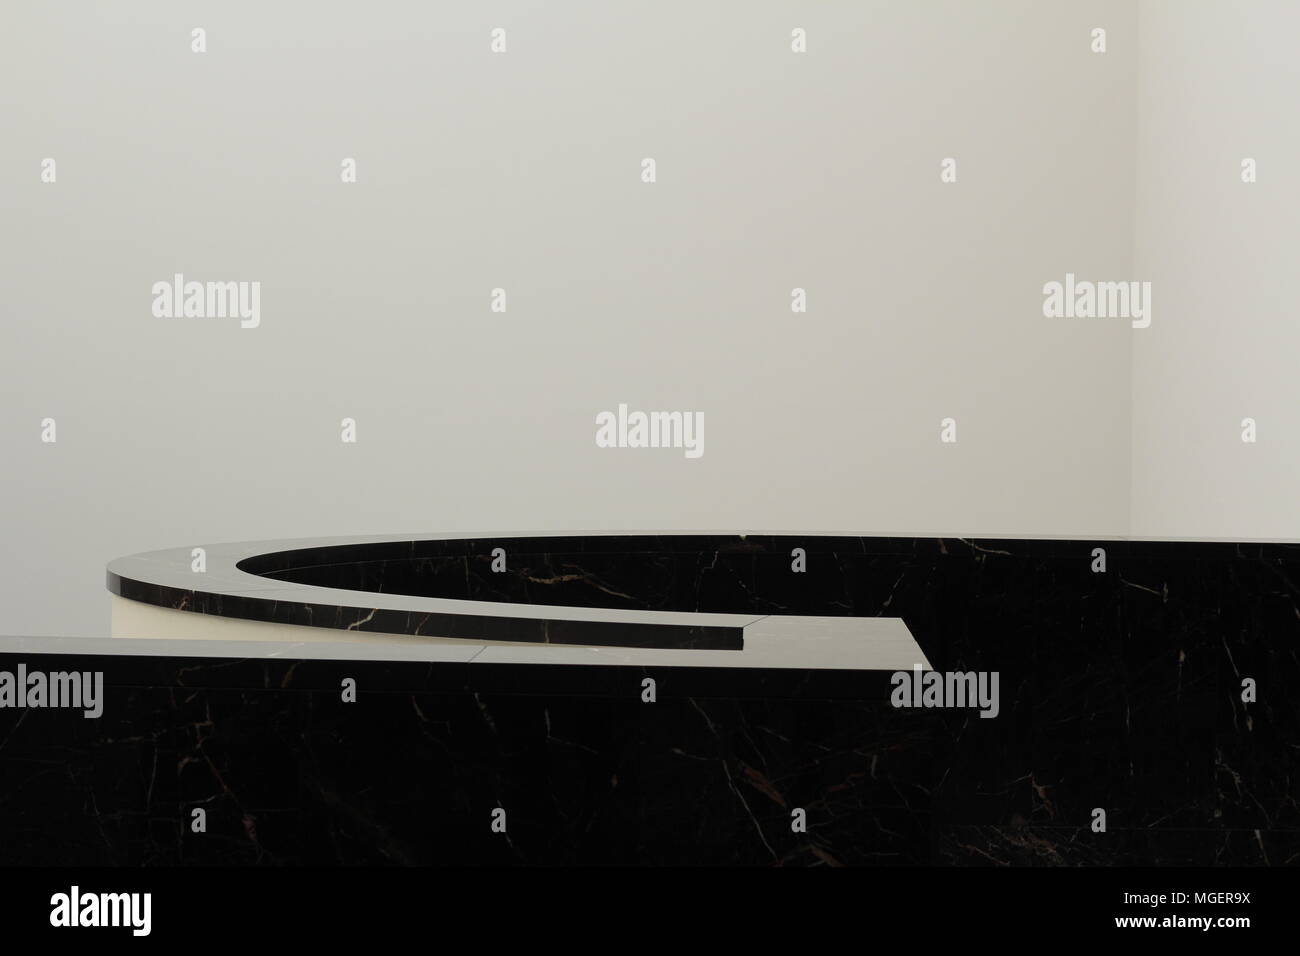 Geometría de instrumentos arquitectónicos en blanco y negro, negro pasamanos que crea un fuerte contraste con la pared blanca del fondo Foto de stock